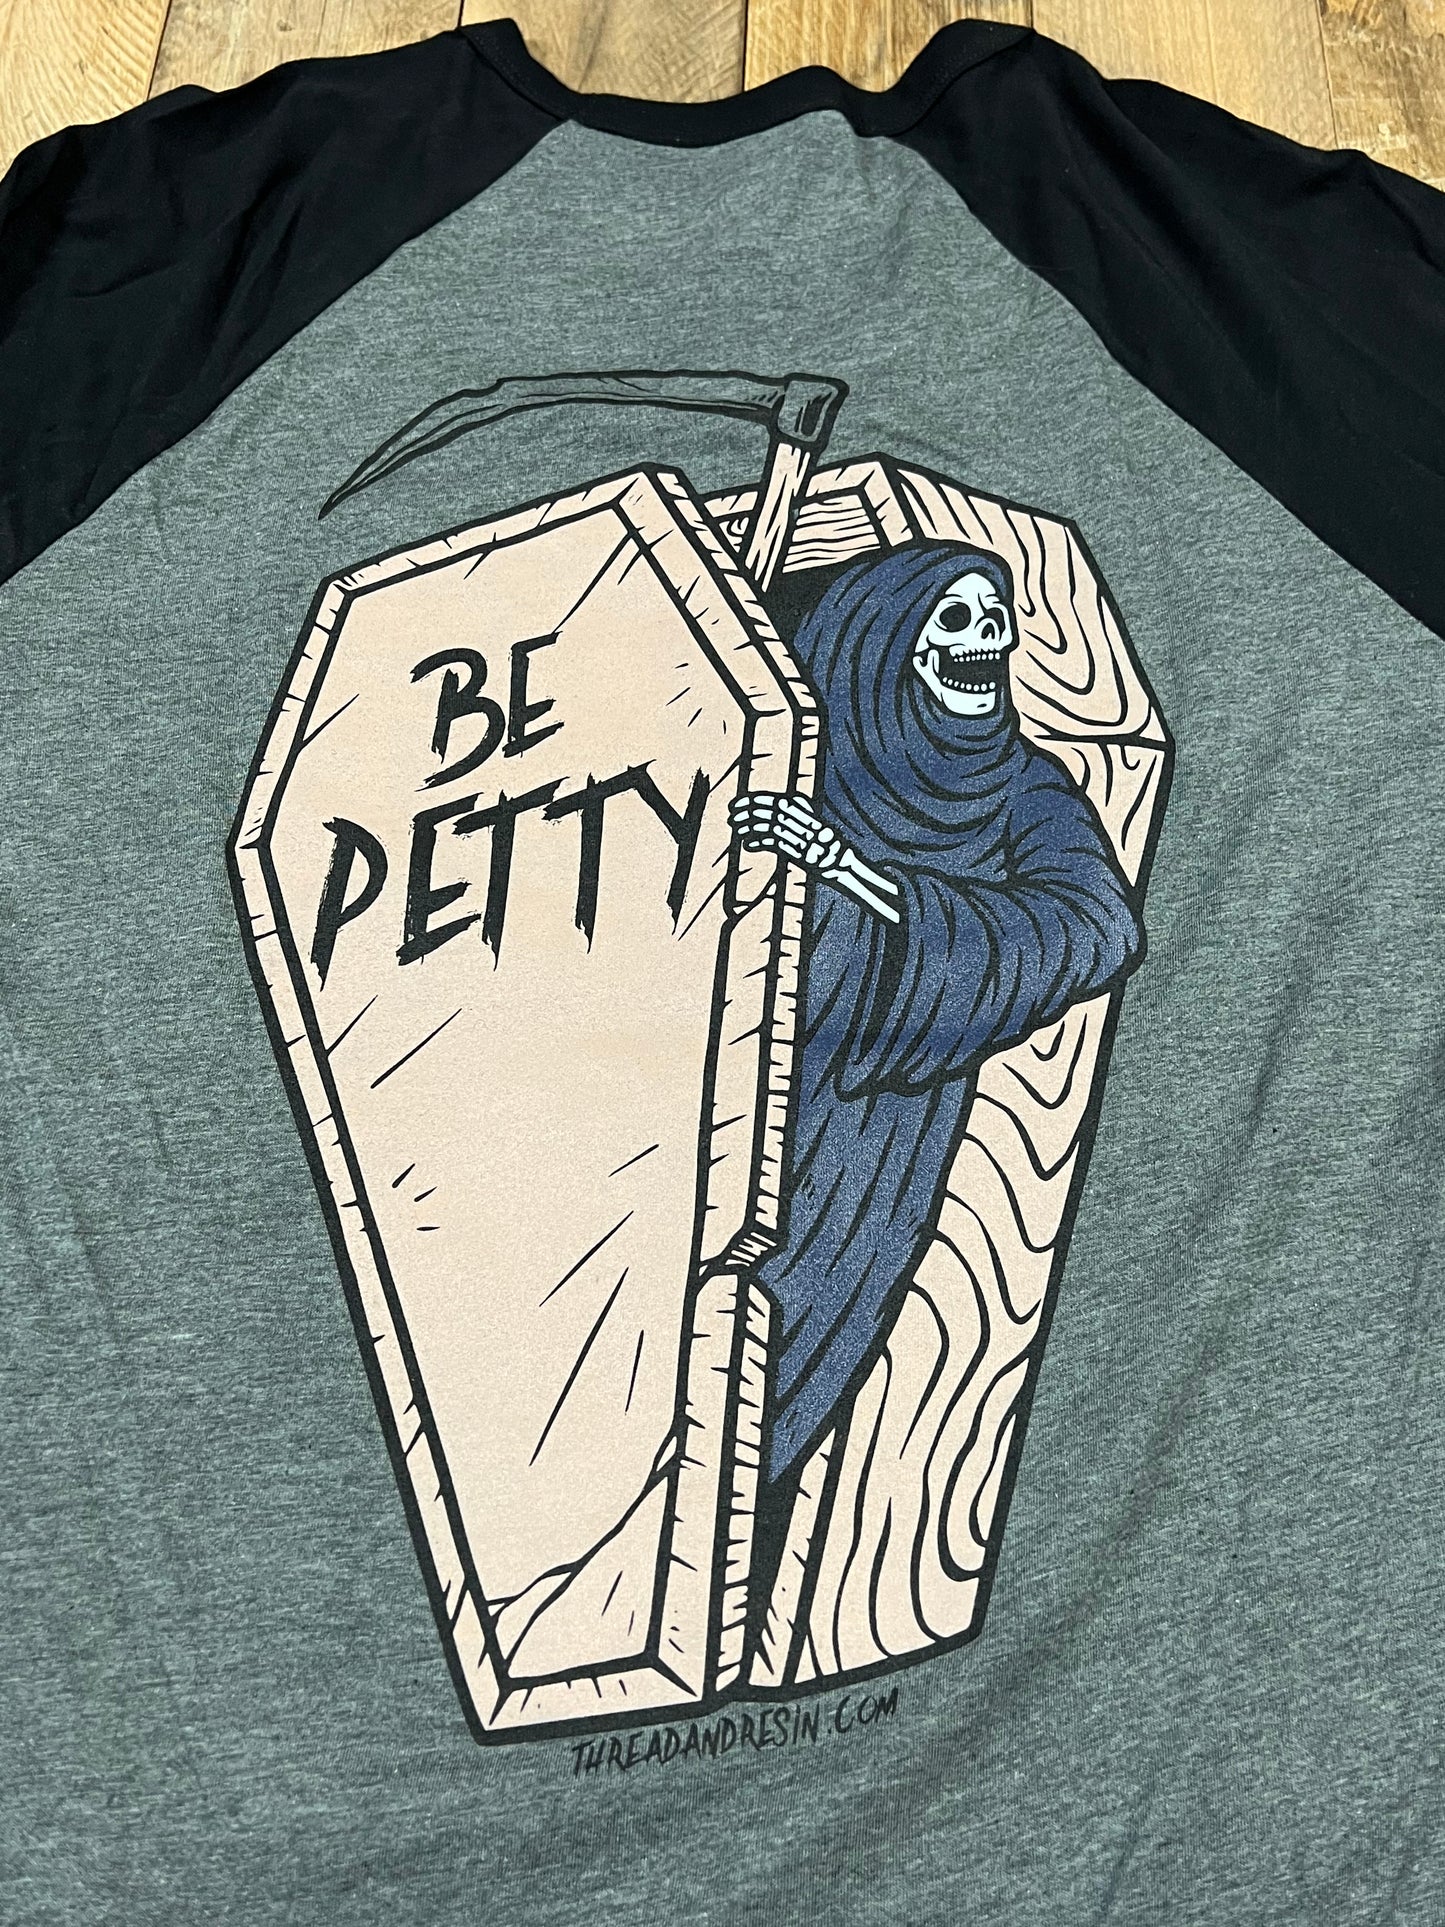 Be Petty Shirt